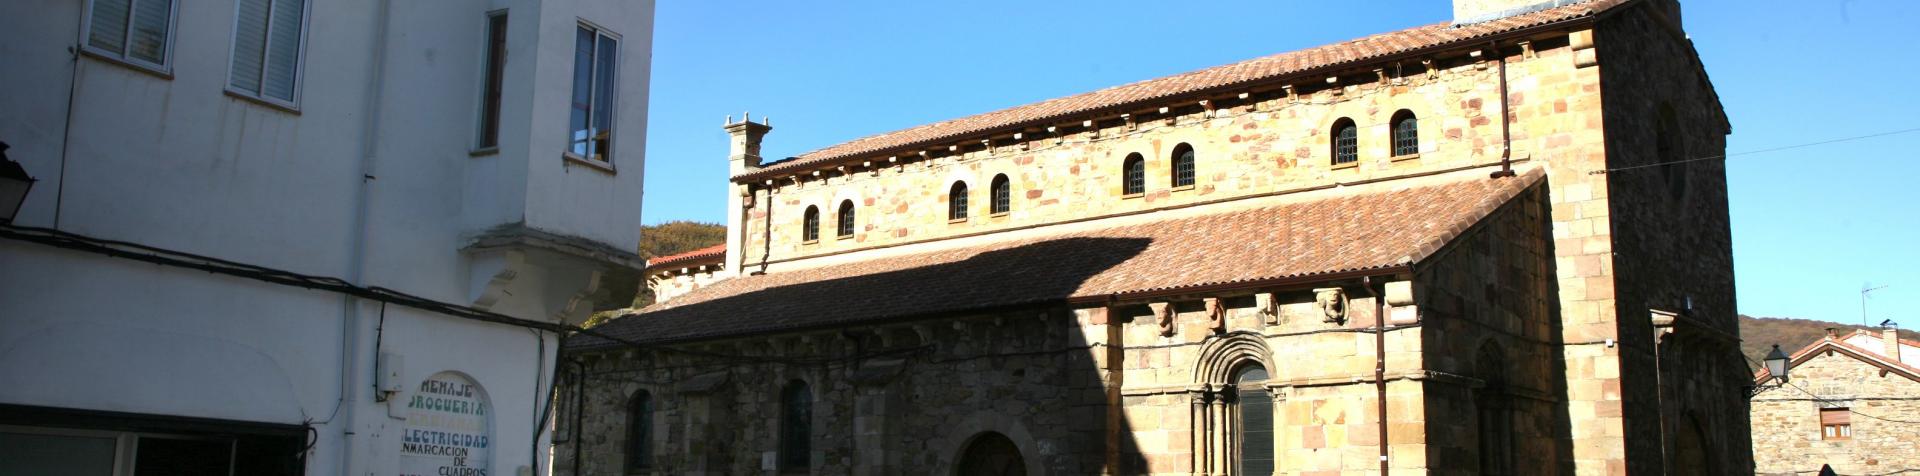 Panorámica de la iglesia de Santo Tomás Apóstol de Barruelo de Santullán